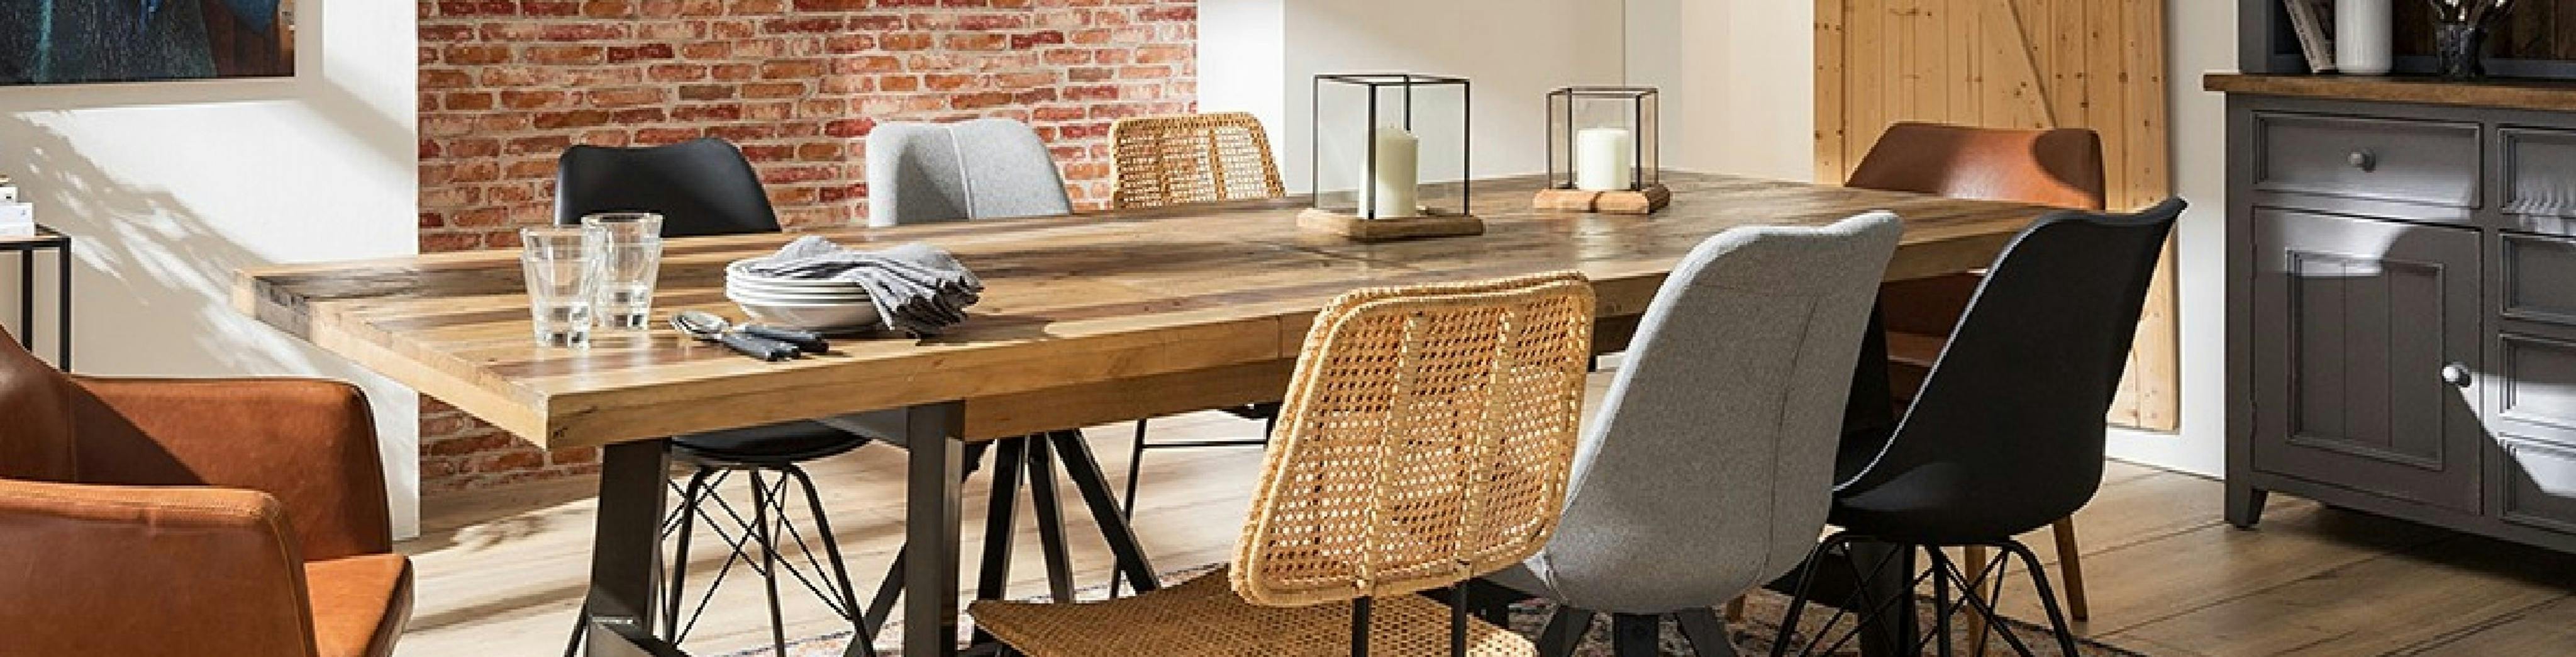 Langer Massivholztisch mit unterschiedliche Esszimmerstühle aus Leder, Kunststoff und Flechtgewebe